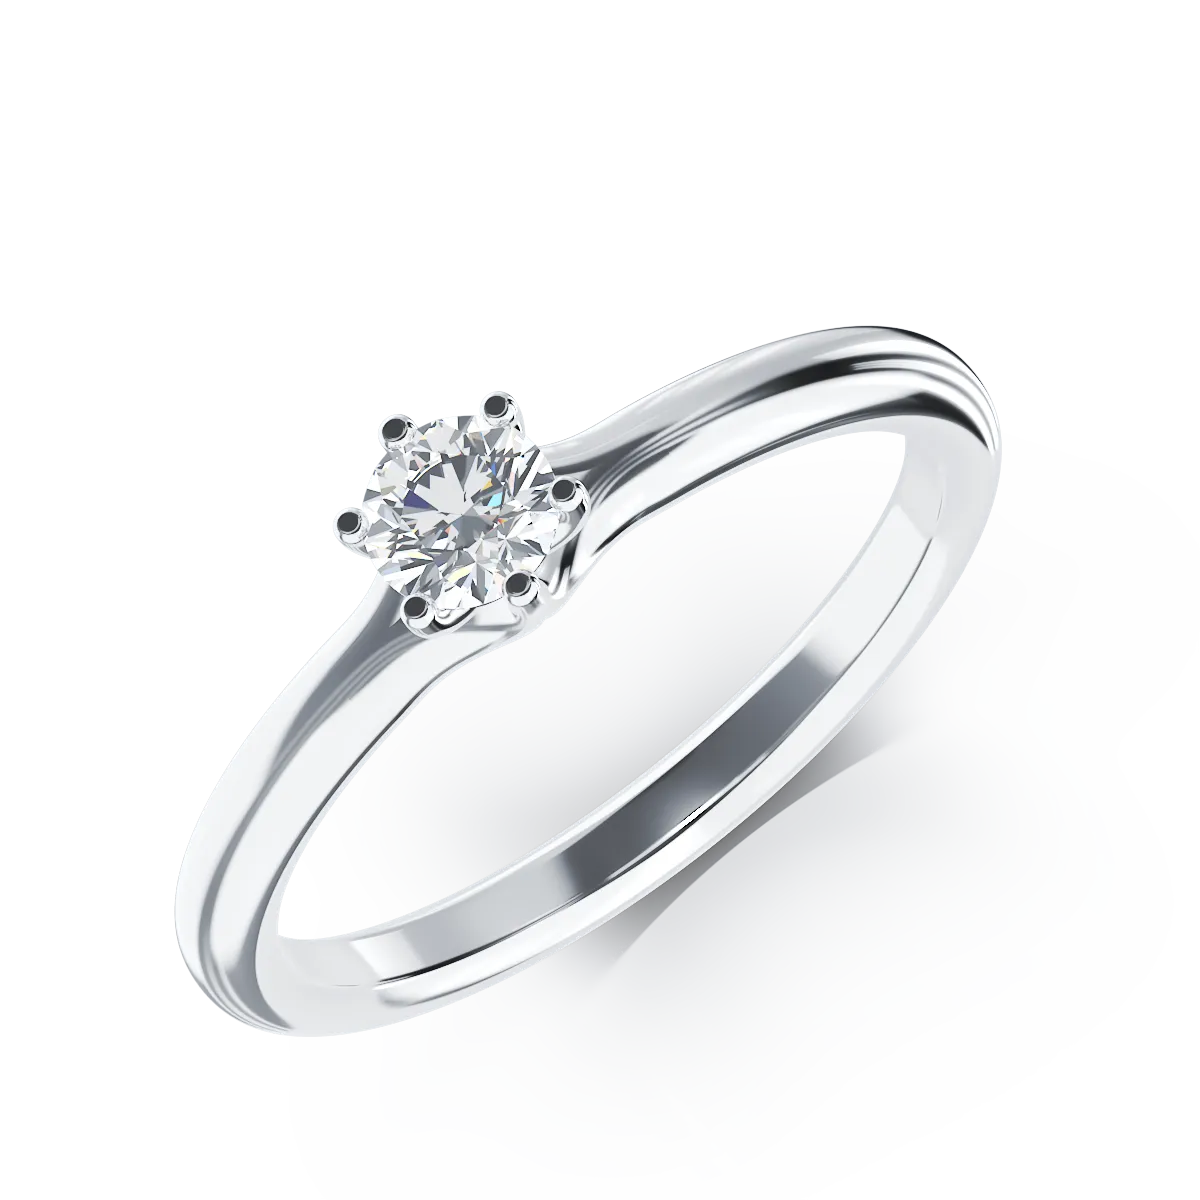 Platynowy pierścionek zaręczynowy z brylantem o masie 0,205ct